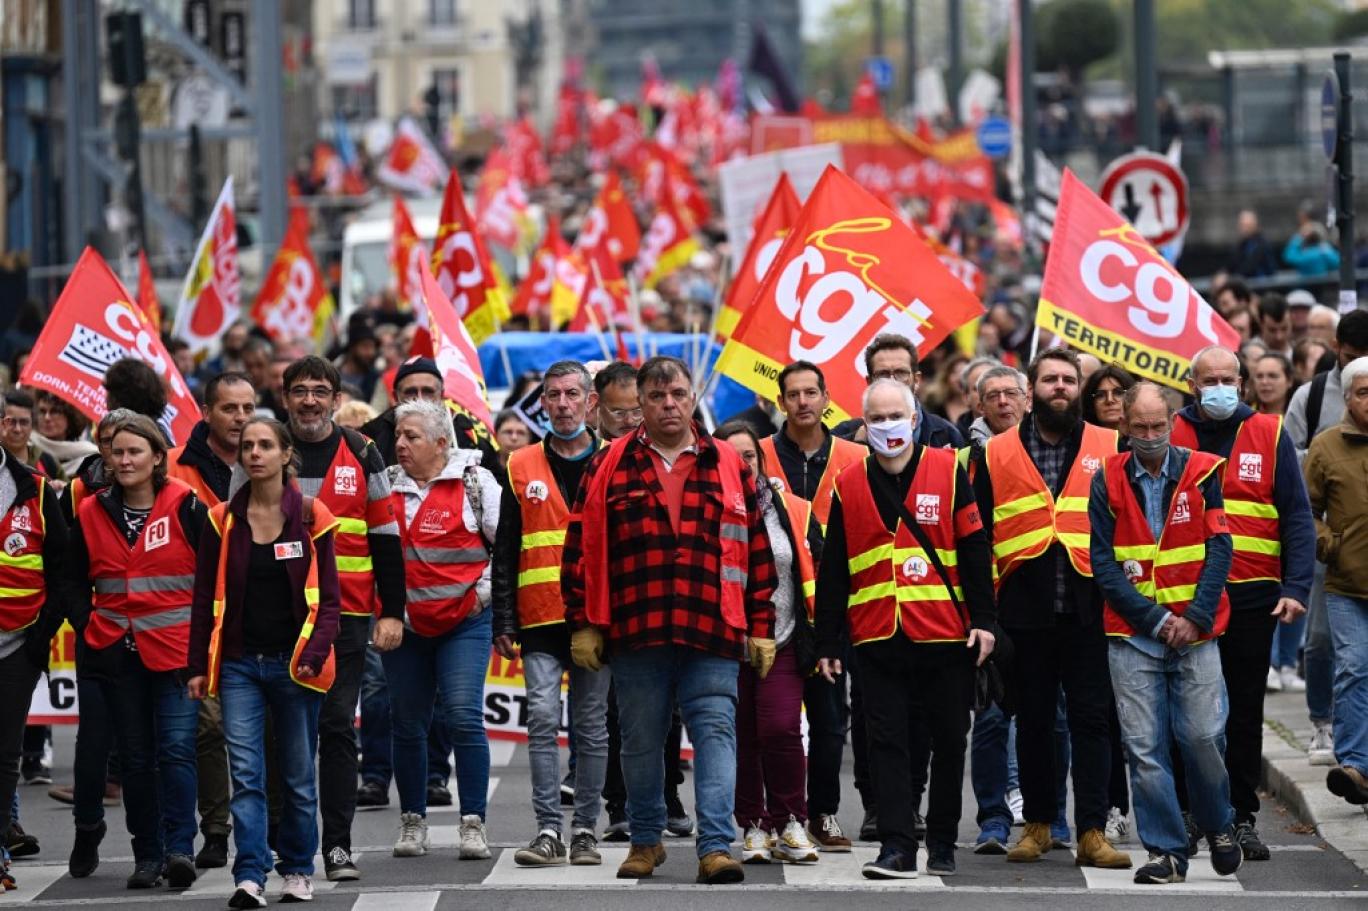 اعتصاب سراسری در فرانسه